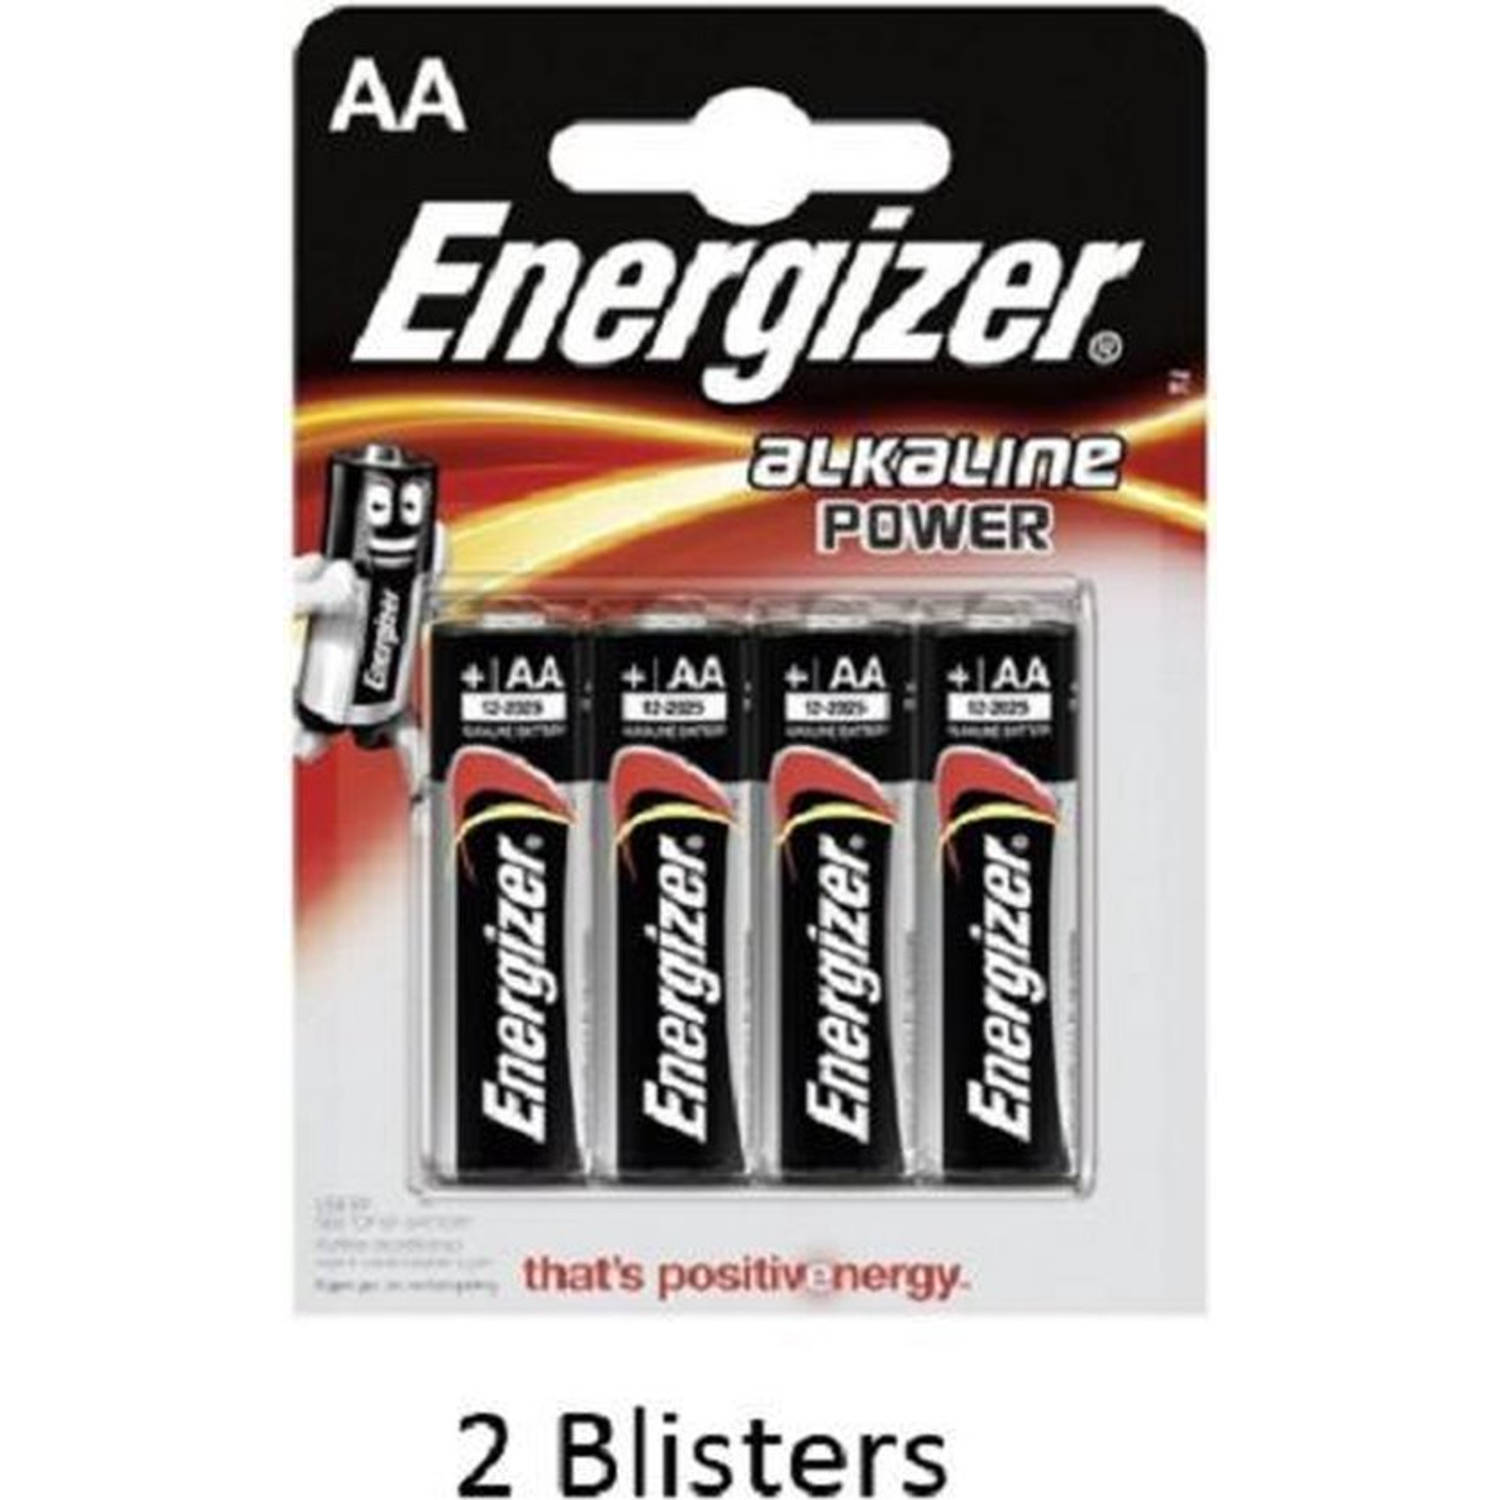 Modderig alcohol Ruwe olie 8 stuks (2 blisters a 4 stuks) Energizer AA Alkaline Power 1.5V | Blokker